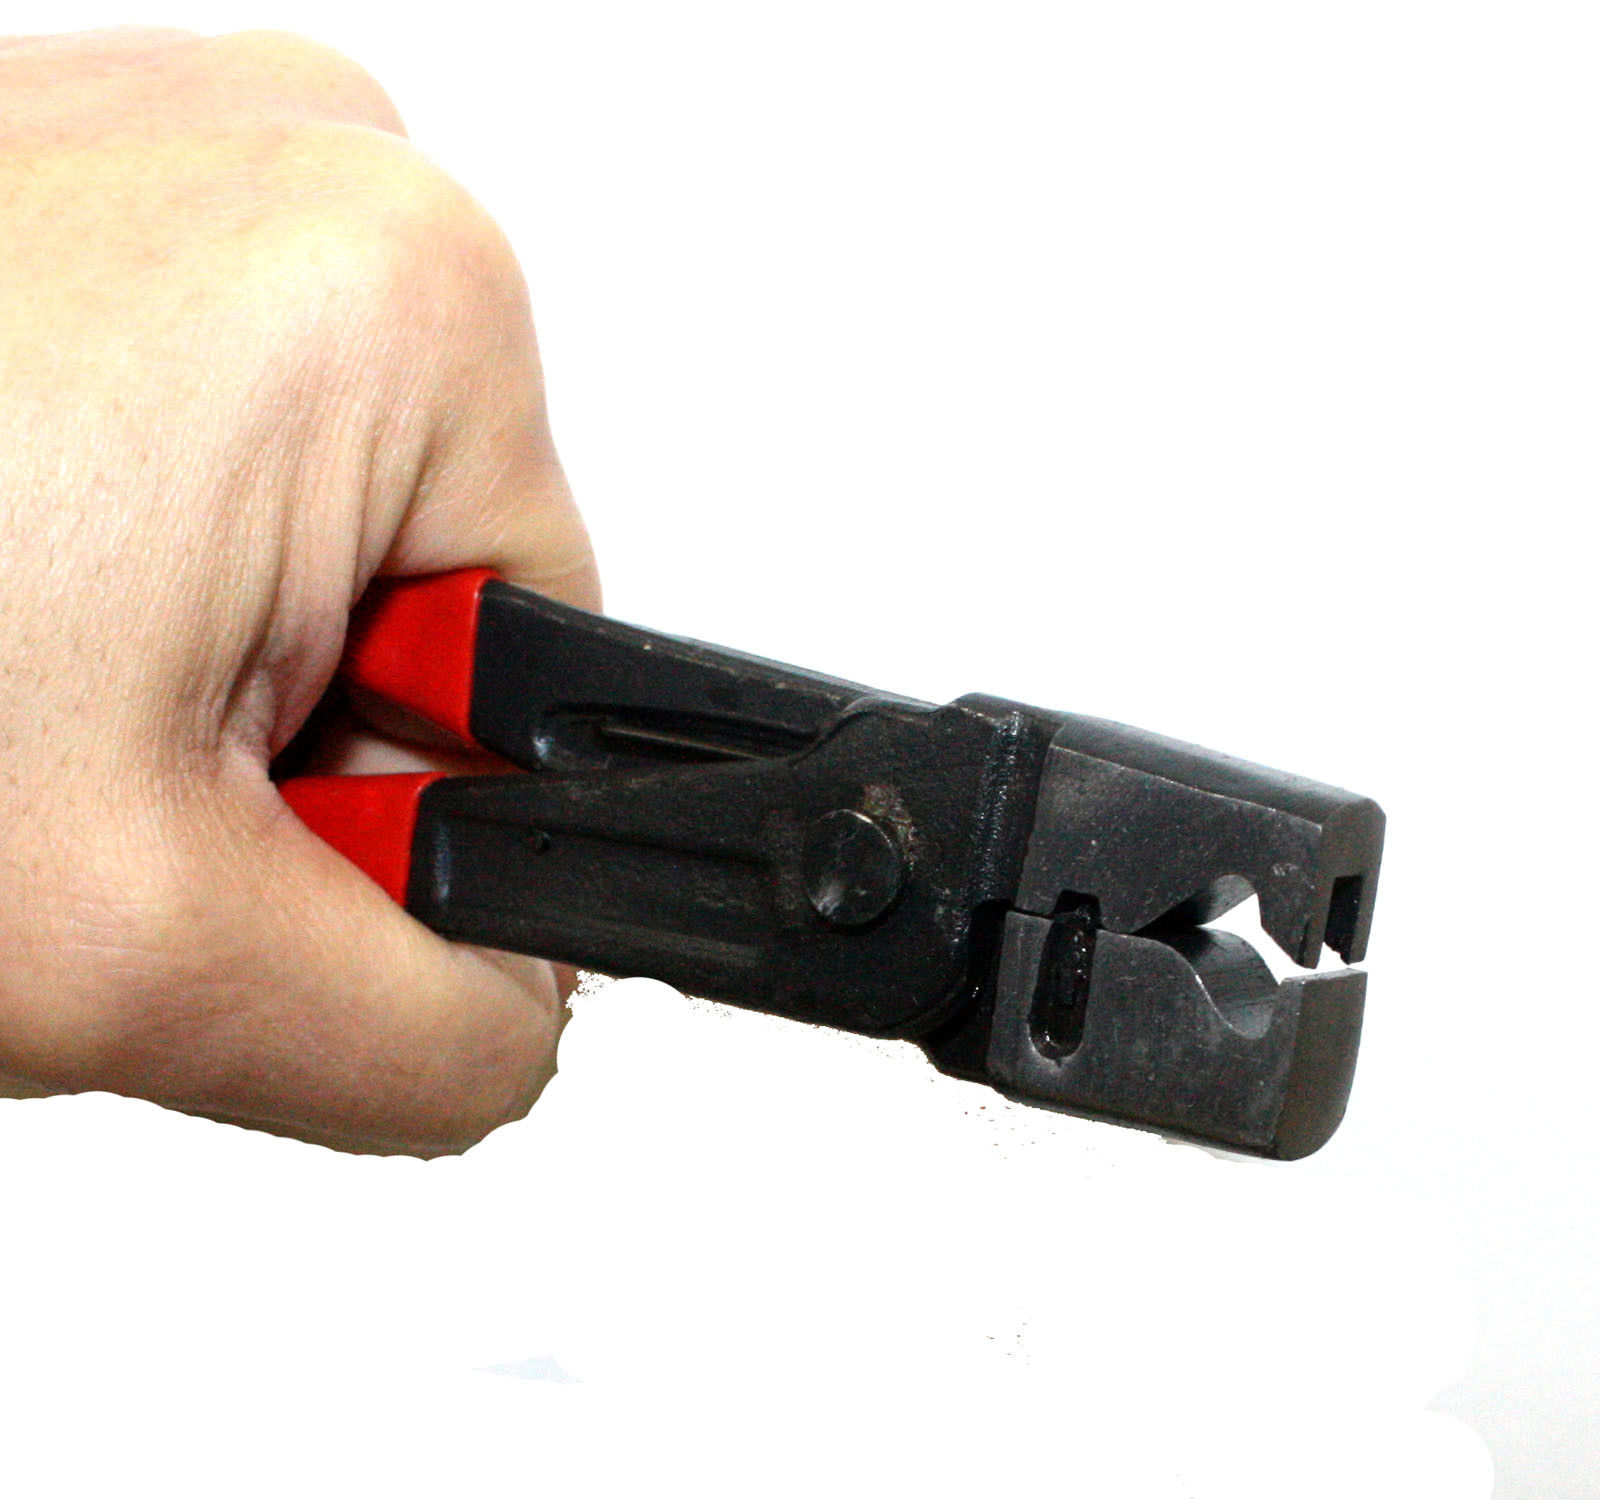 Clicr-R Type Hose Clip Plier Practical Metal Collar Clamp CV Boot Swivel Tool 